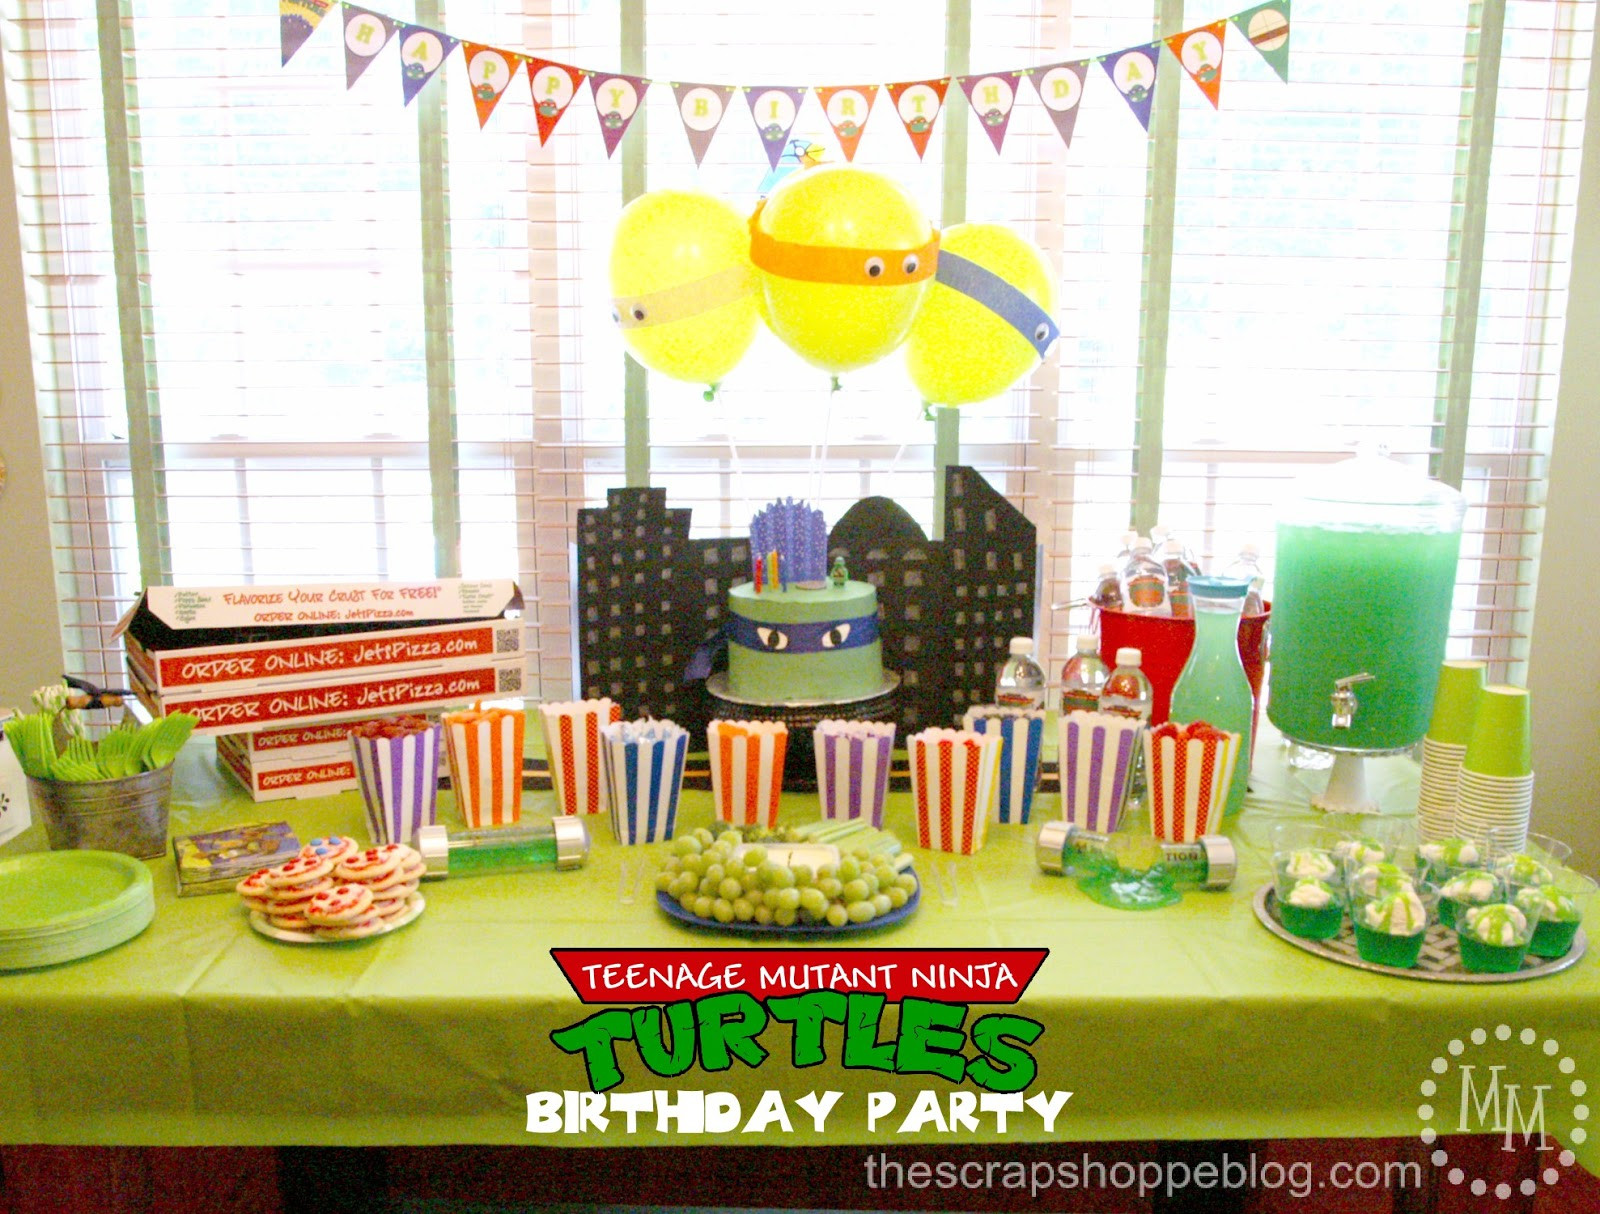 Teenage Mutant Ninja Turtle Birthday Party
 Teenage Mutant Ninja Turtle TMNT Birthday Party The